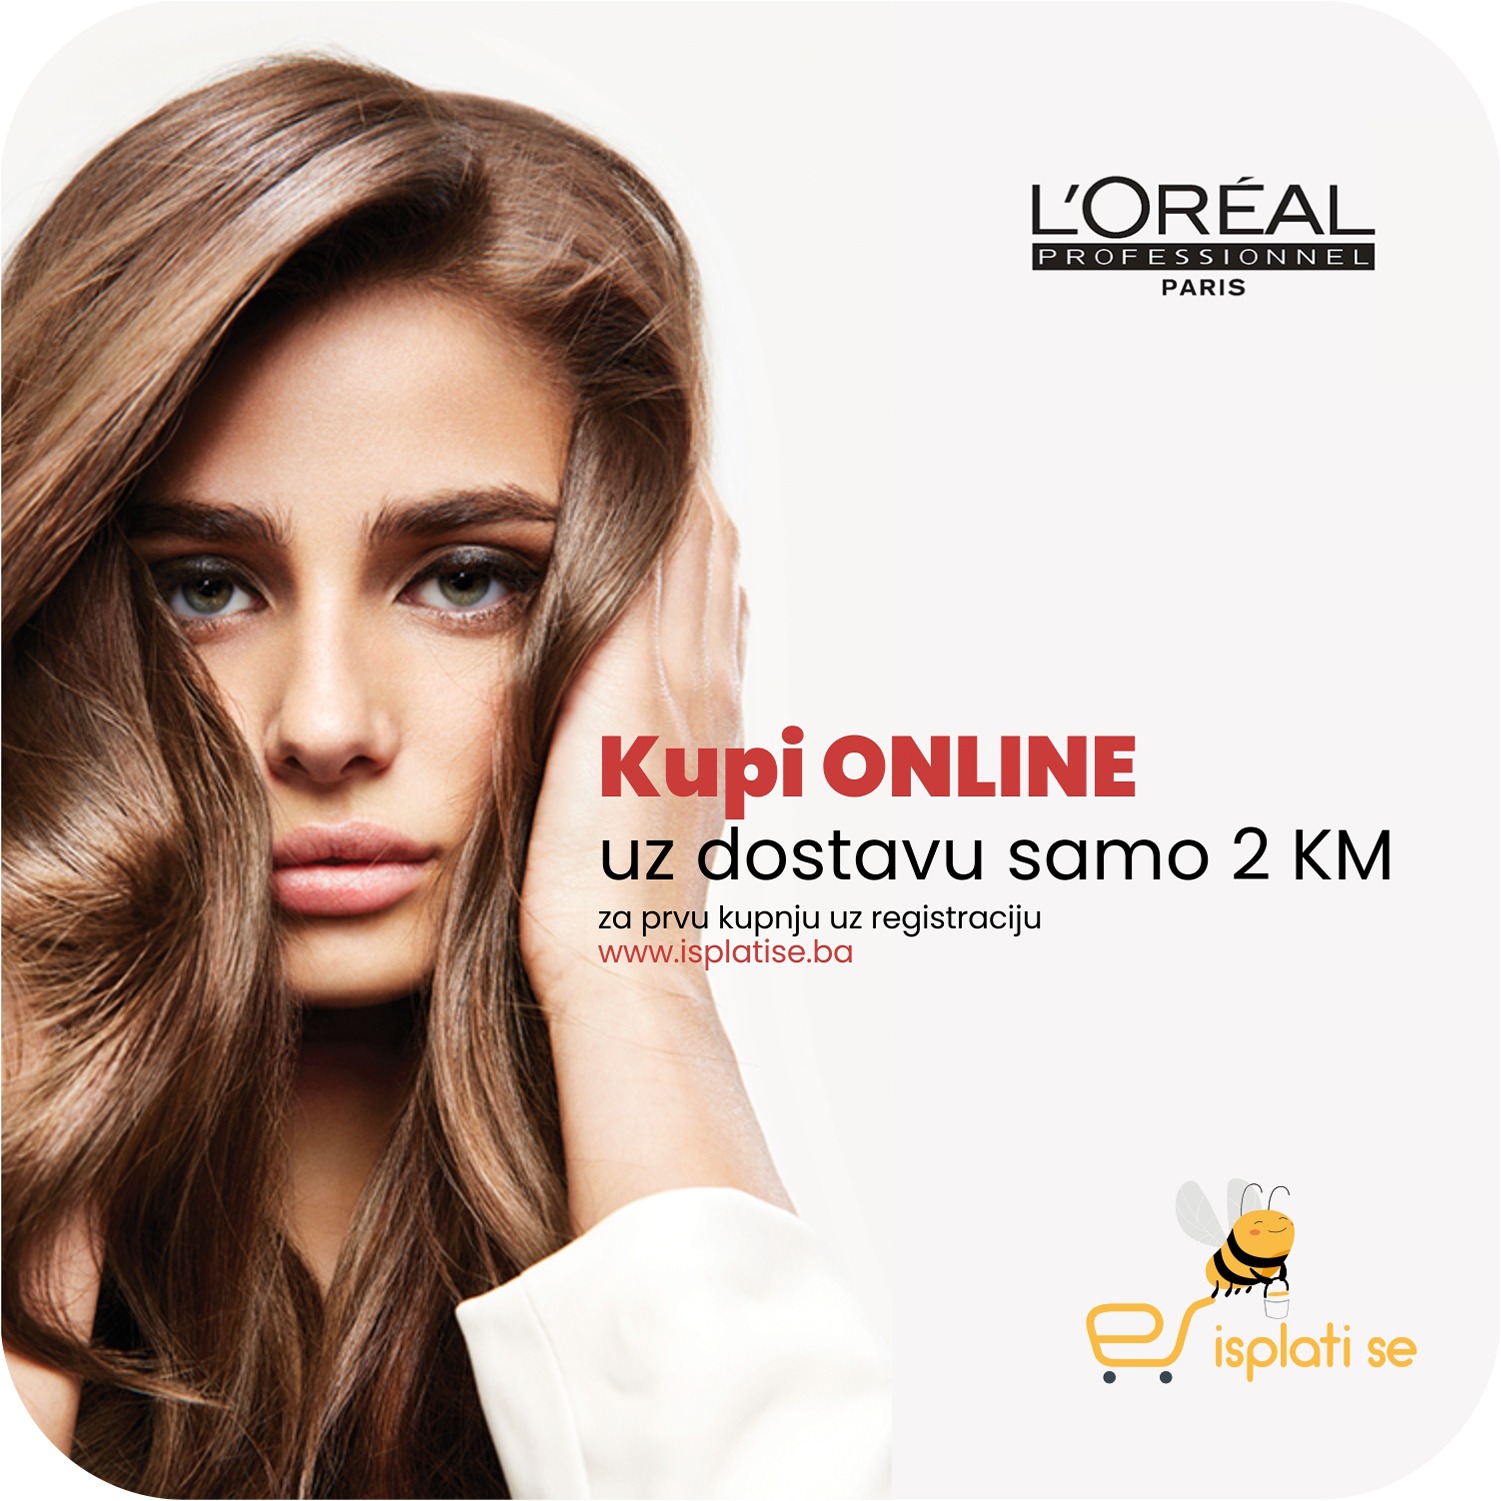 loreal-kupi-online-dostava-2km-isplatise-online-shop-mob-2